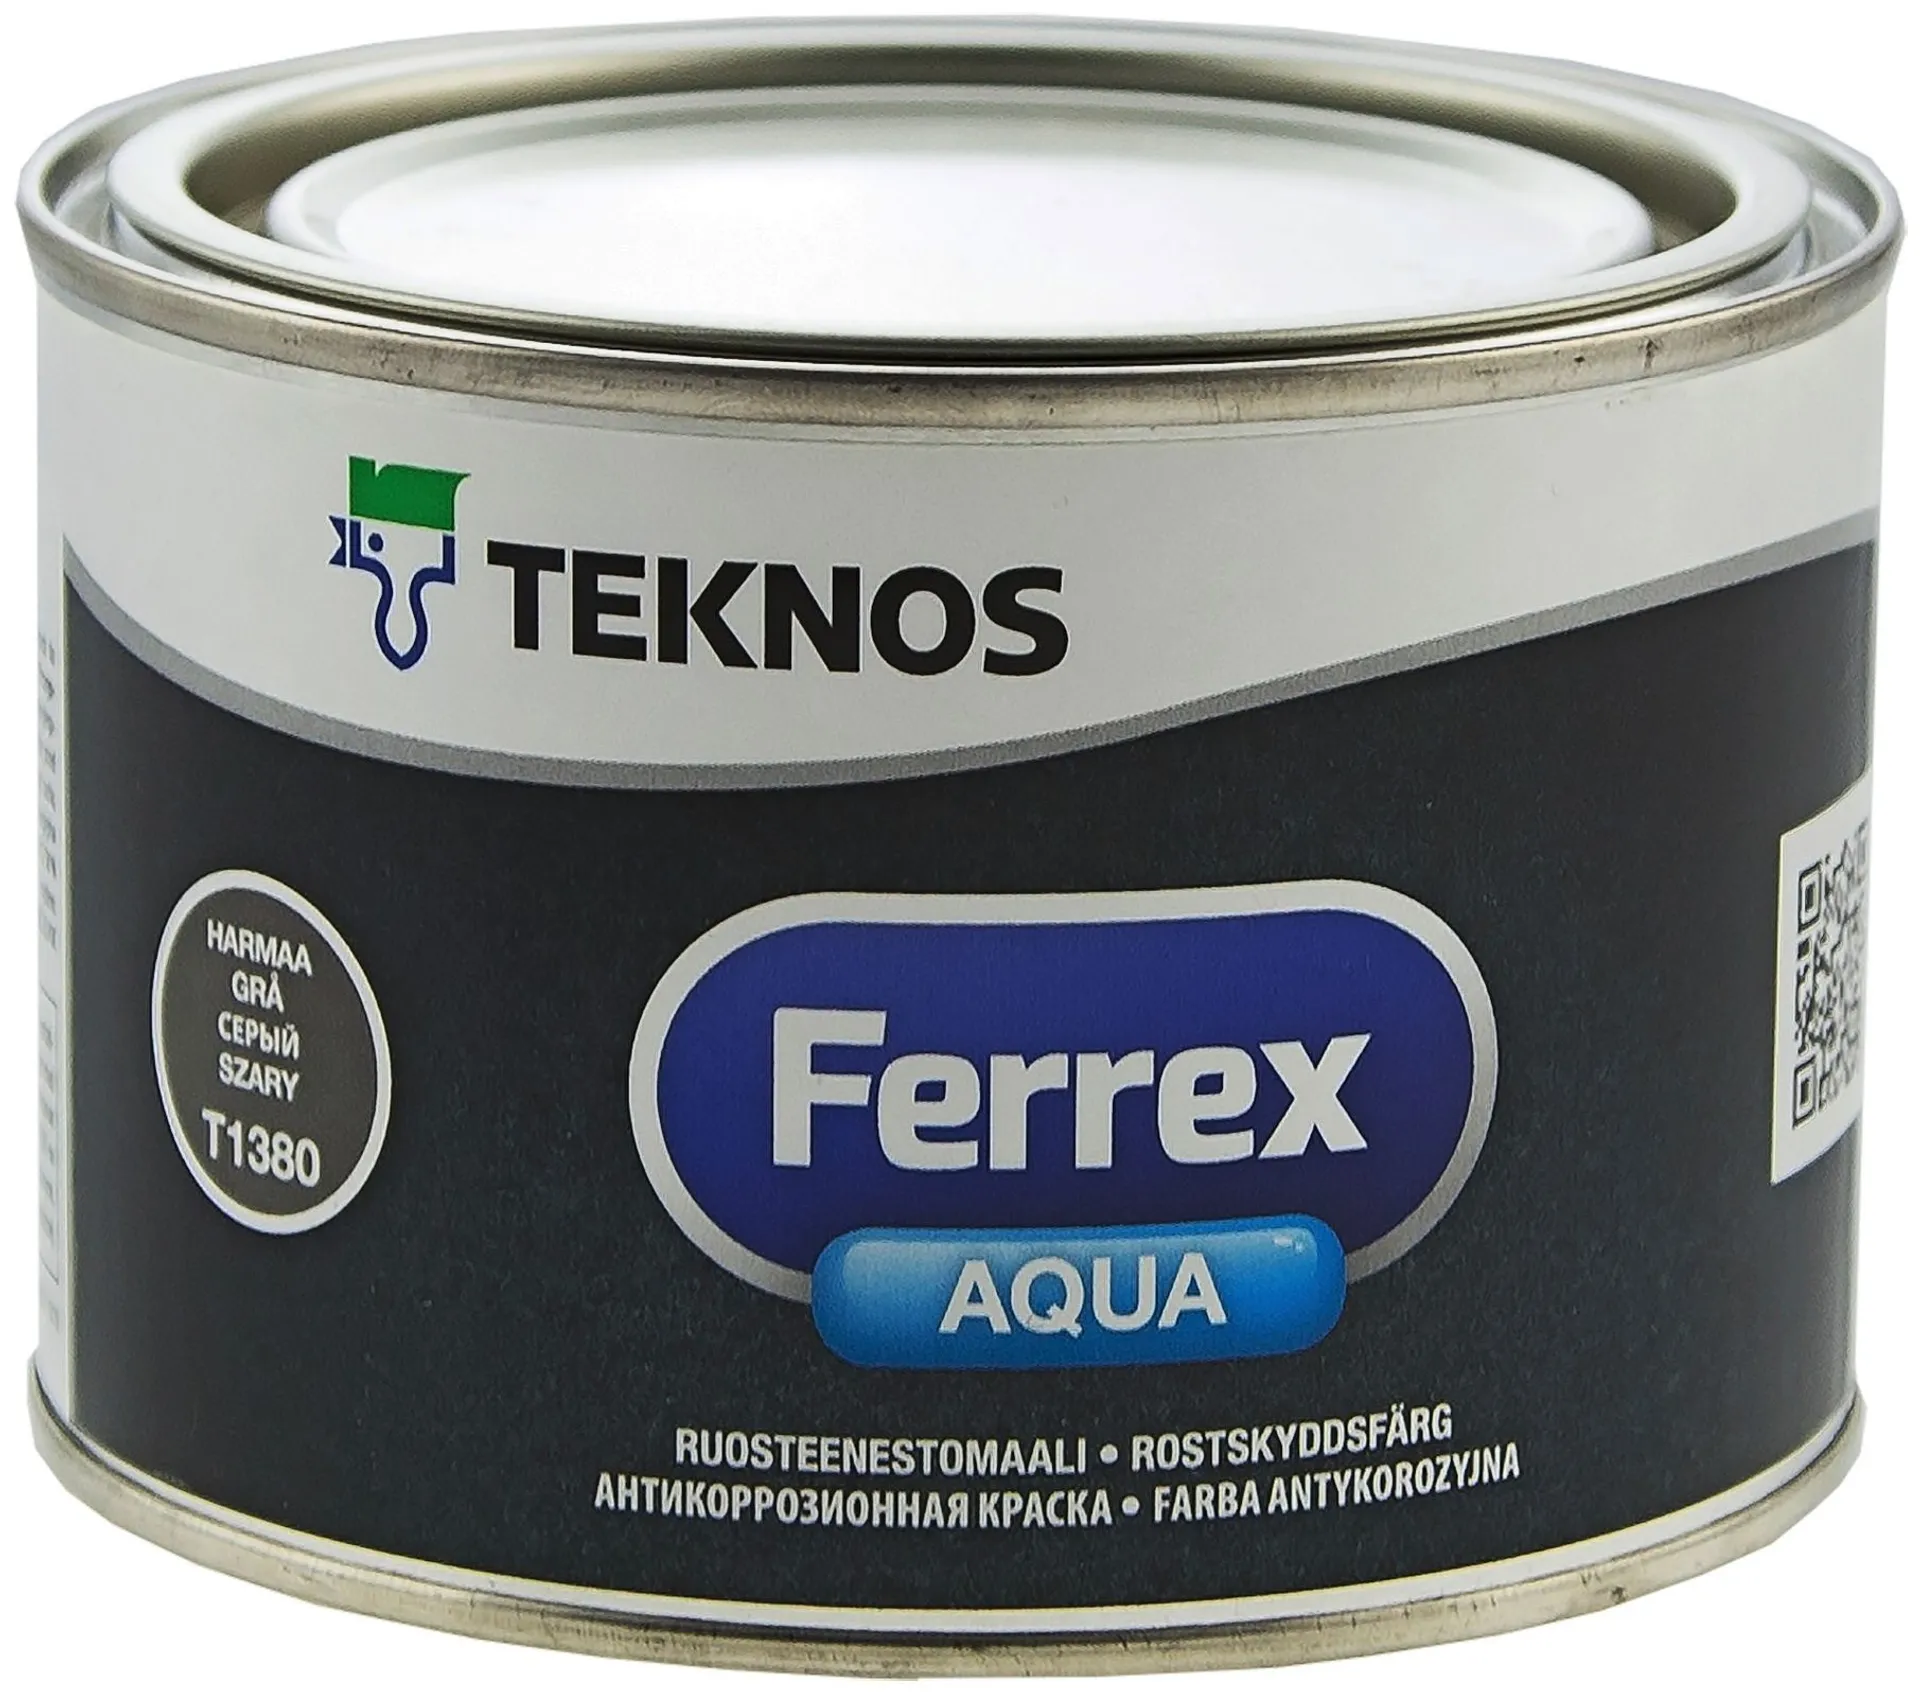 Teknos Ferrex Aqua ruosteenestomaali 0,5l harmaa